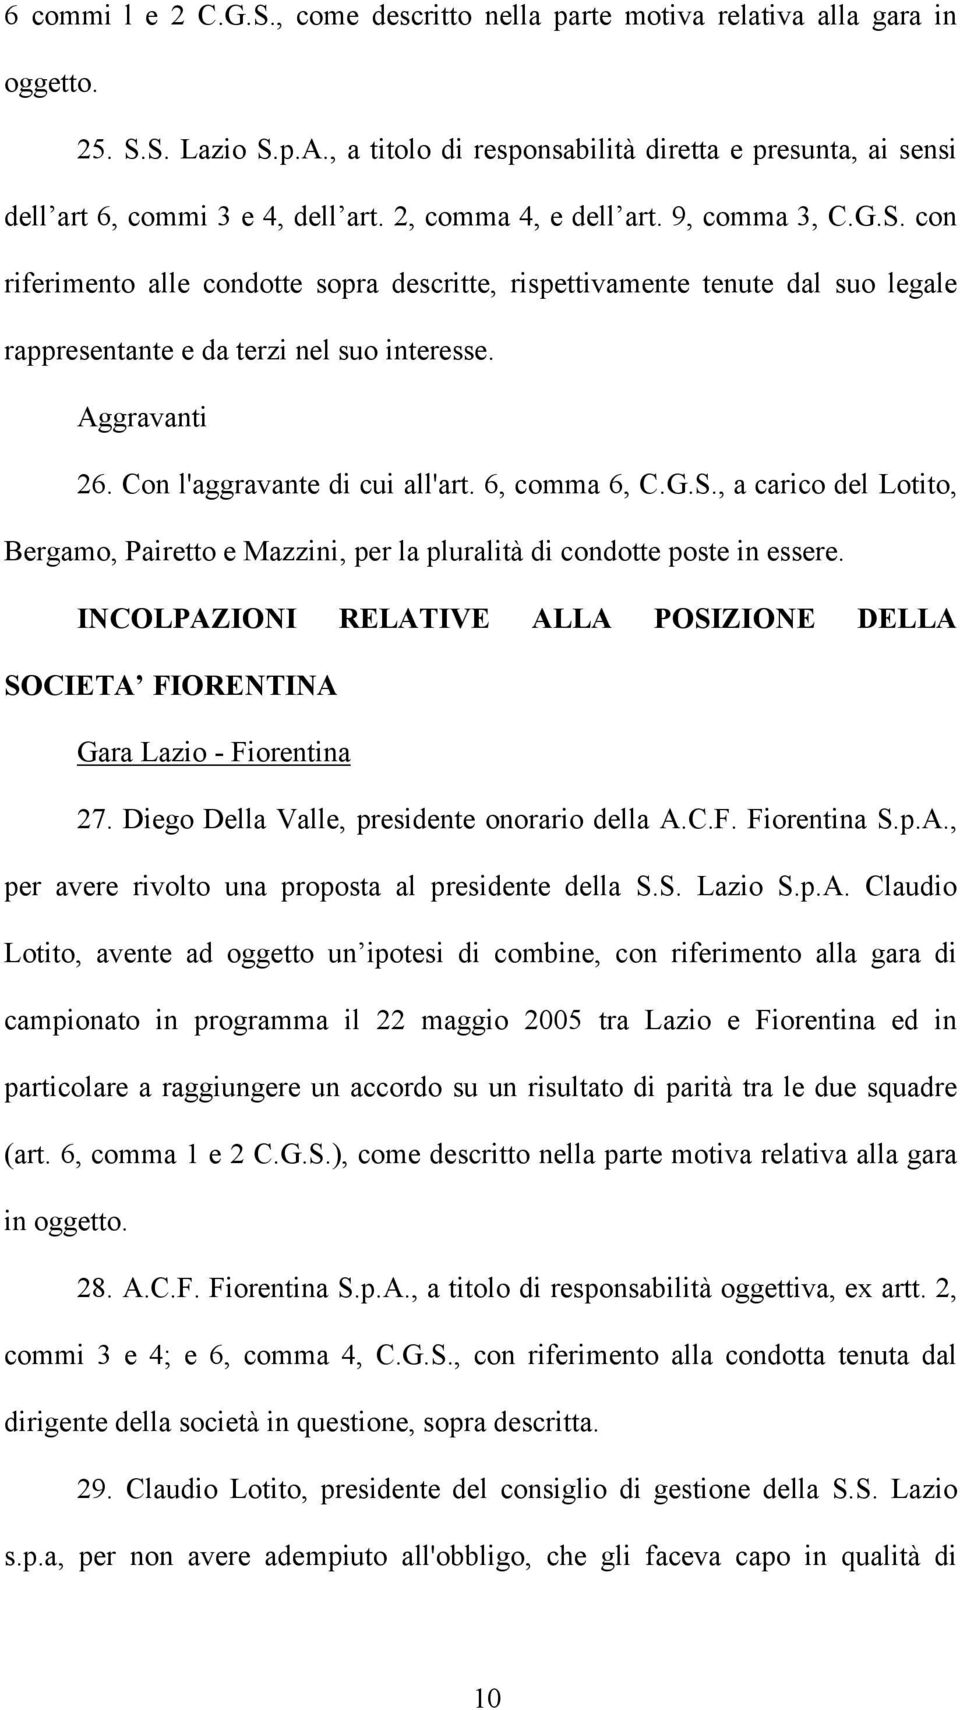 Con l'aggravante di cui all'art. 6, comma 6, C.G.S., a carico del Lotito, Bergamo, Pairetto e Mazzini, per la pluralità di condotte poste in essere.